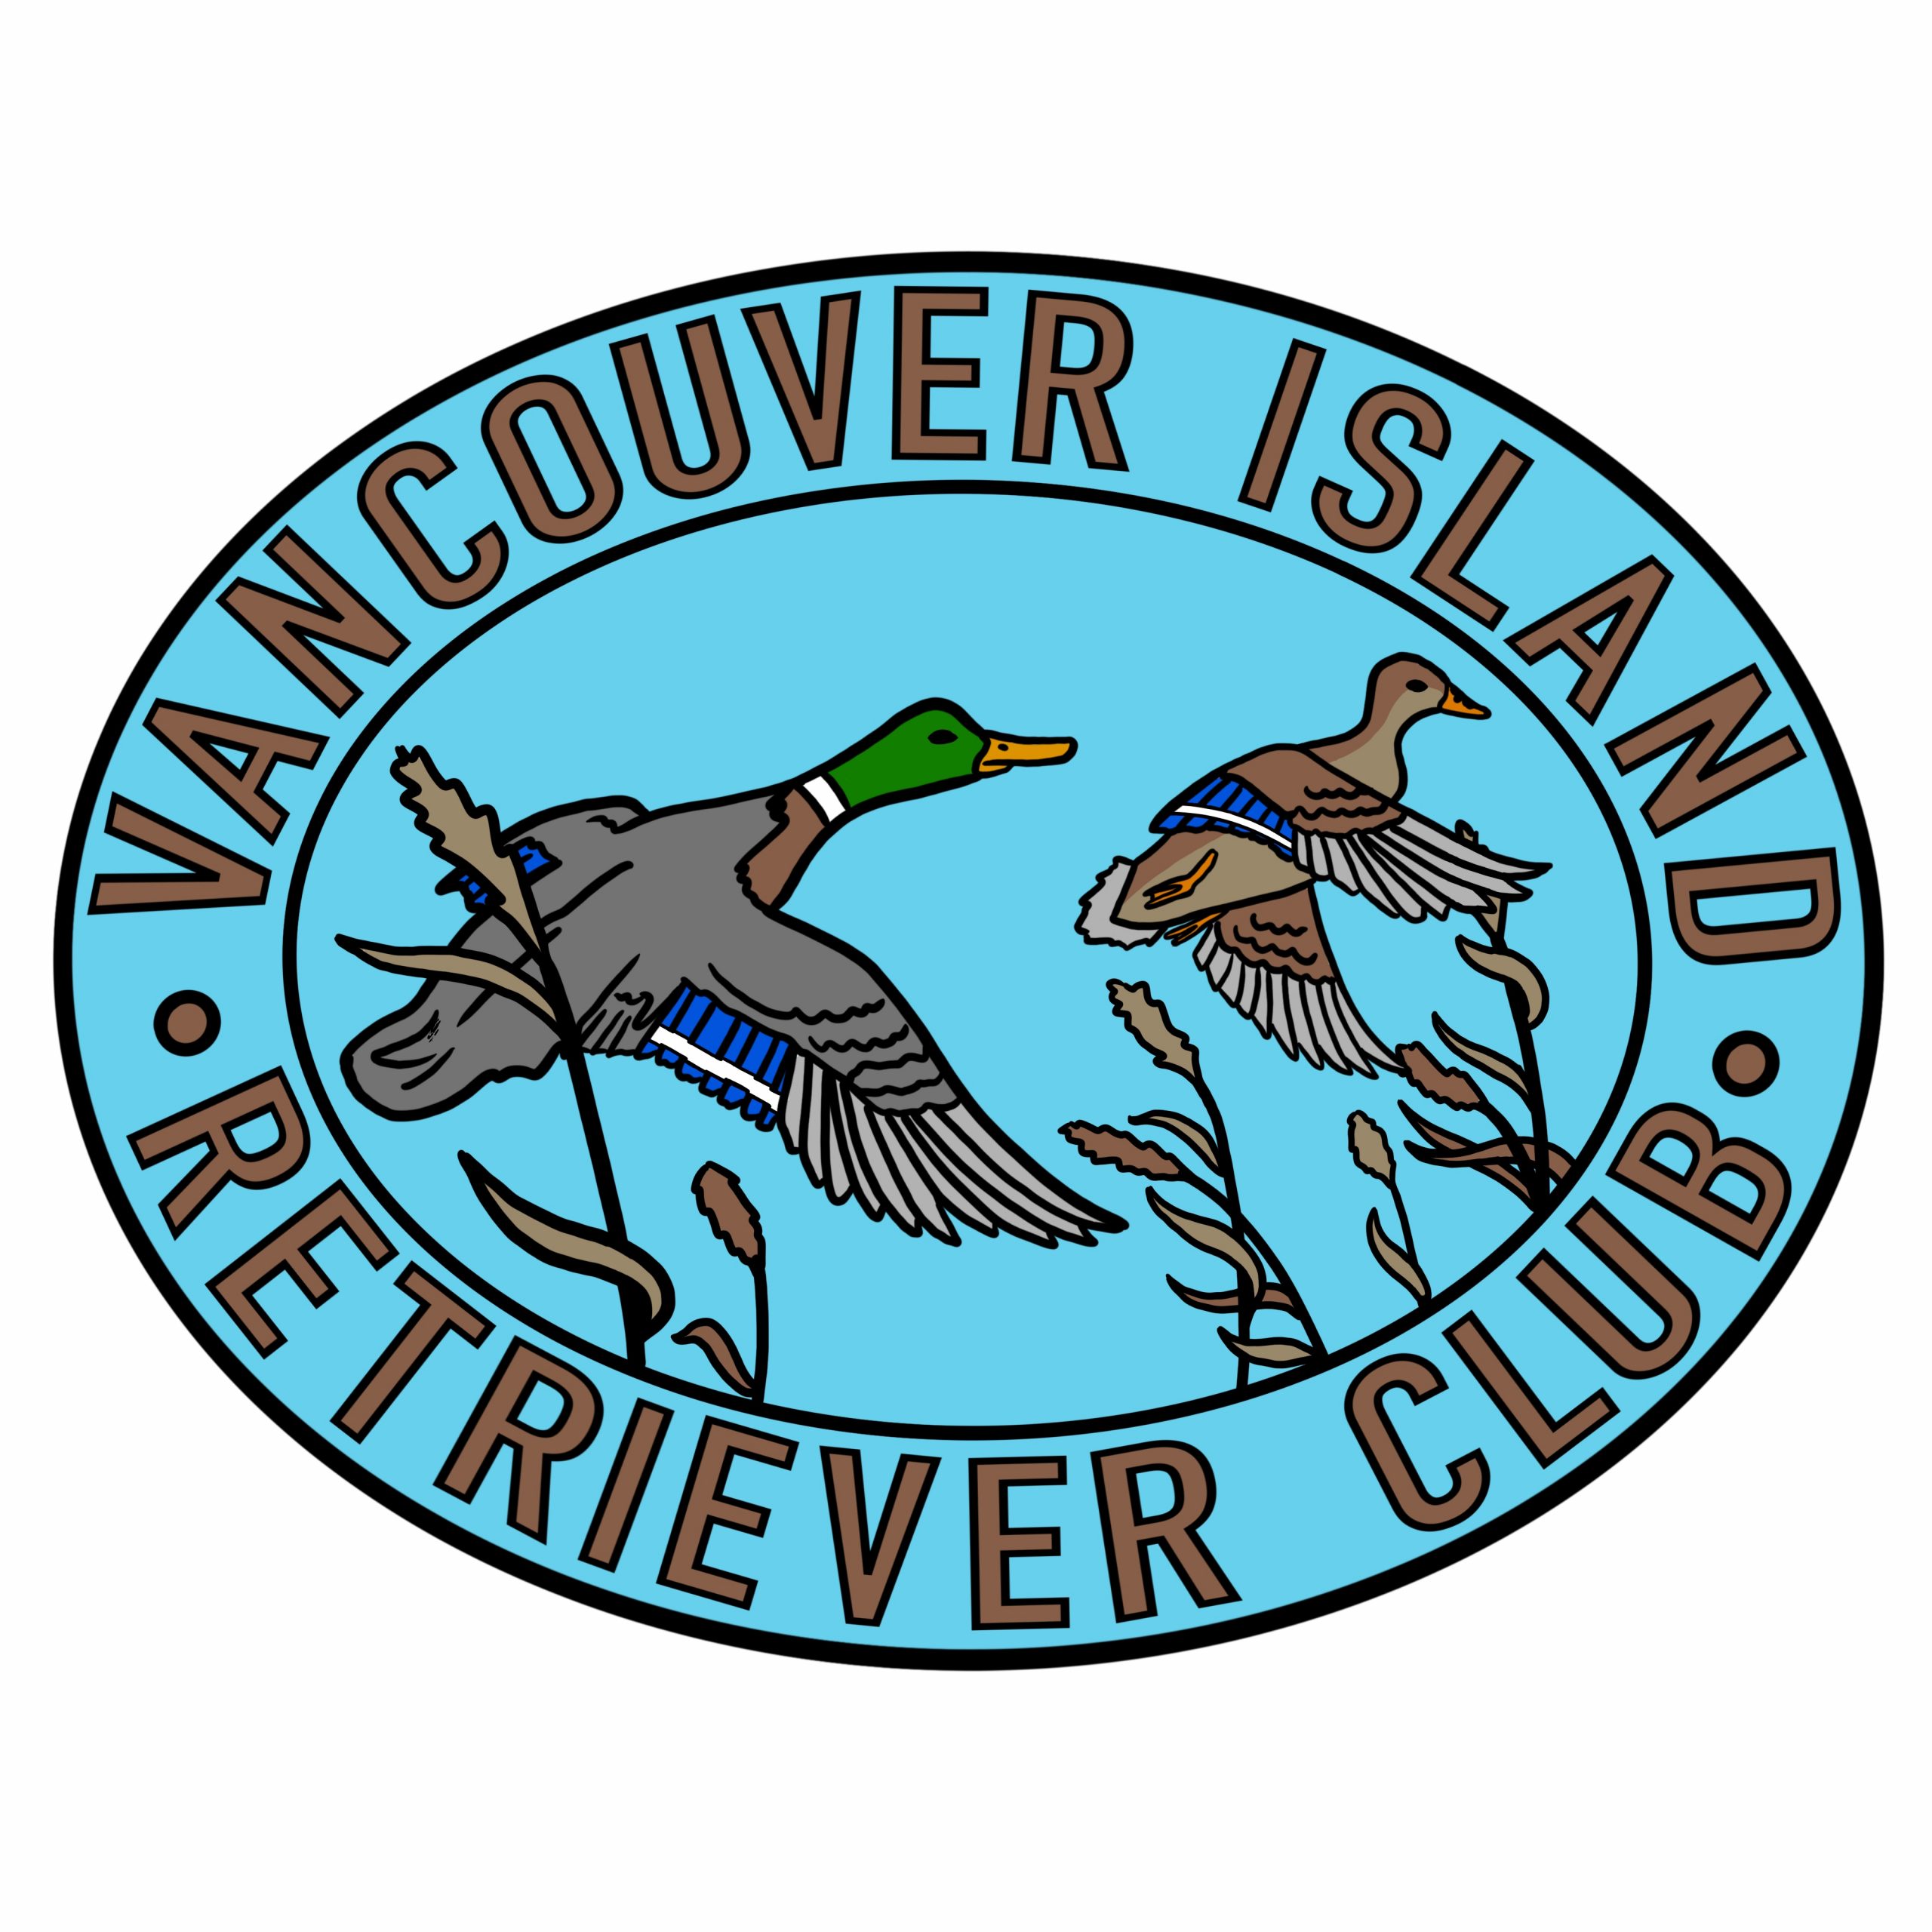 VANCOUVER ISLAND RETRIEVER CLUB